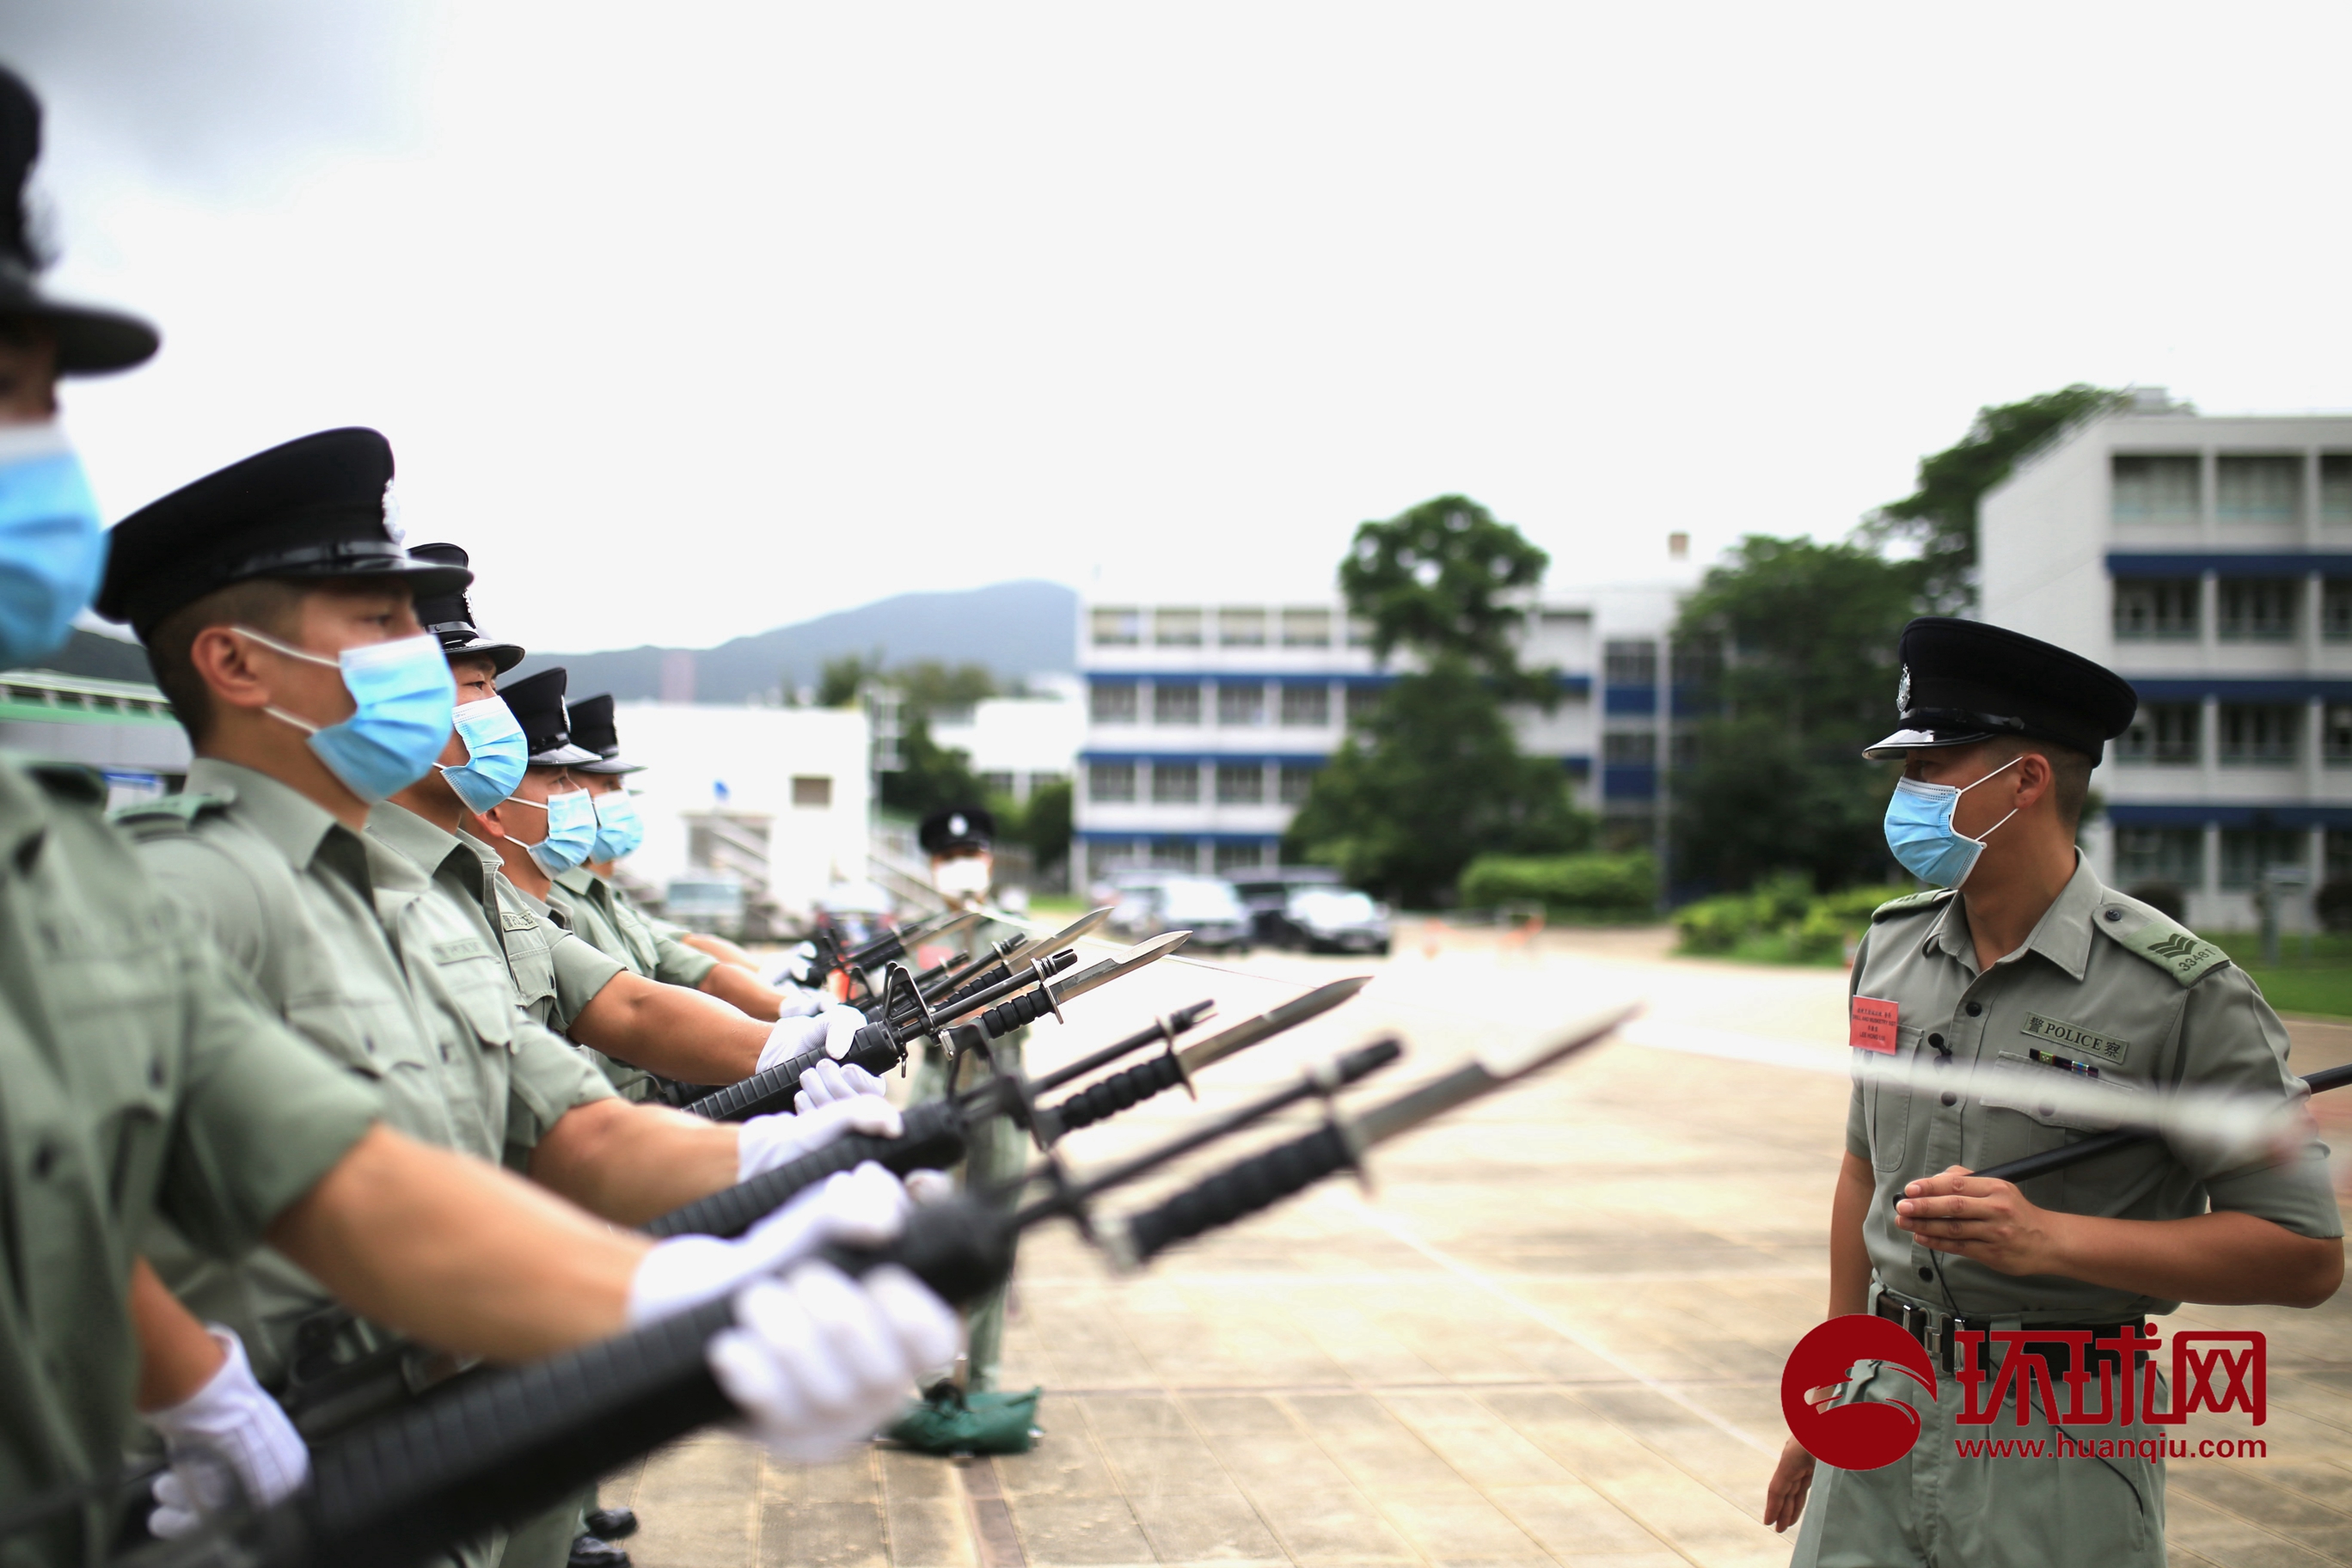 走进香港警察学院看中式步操训练:正步气势恢宏,枪法动作精准